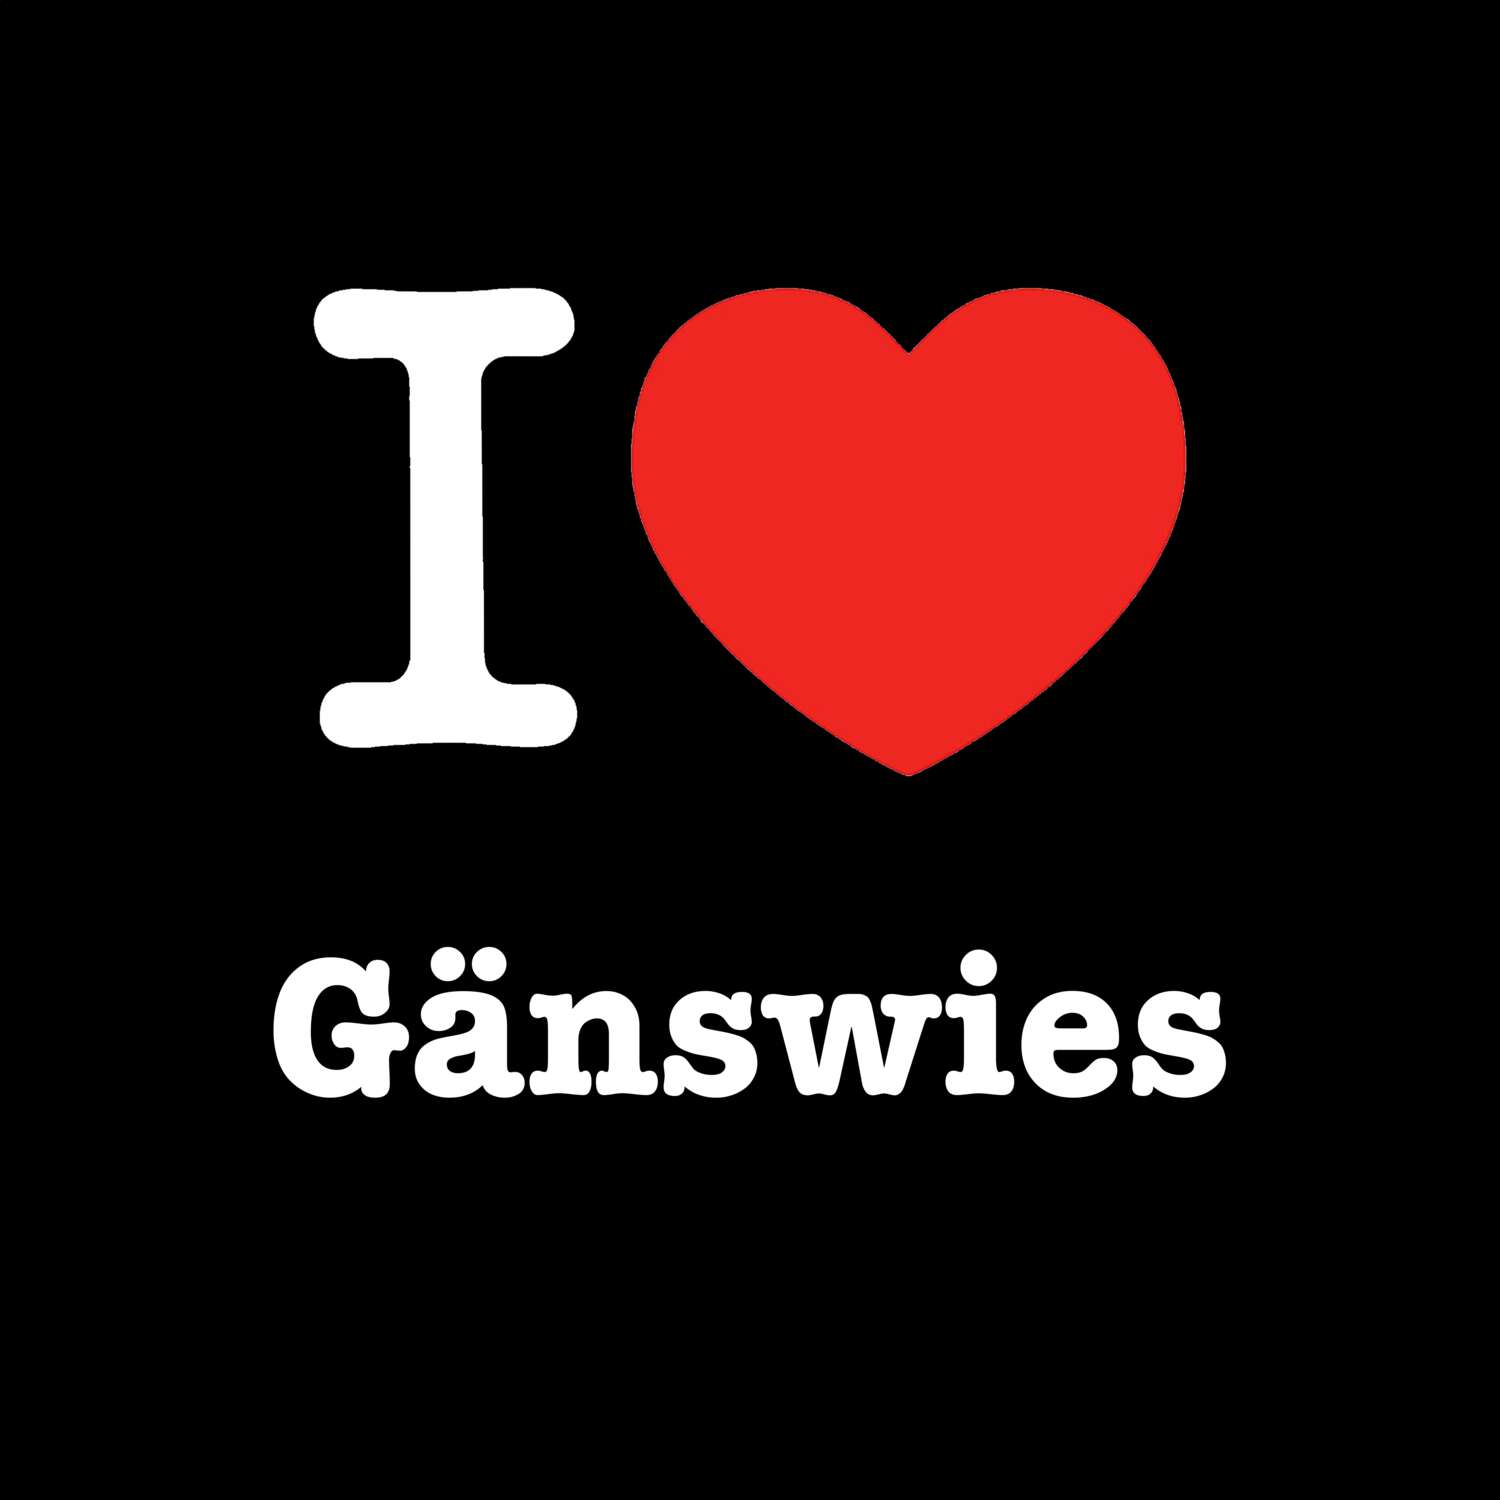 Gänswies T-Shirt »I love«